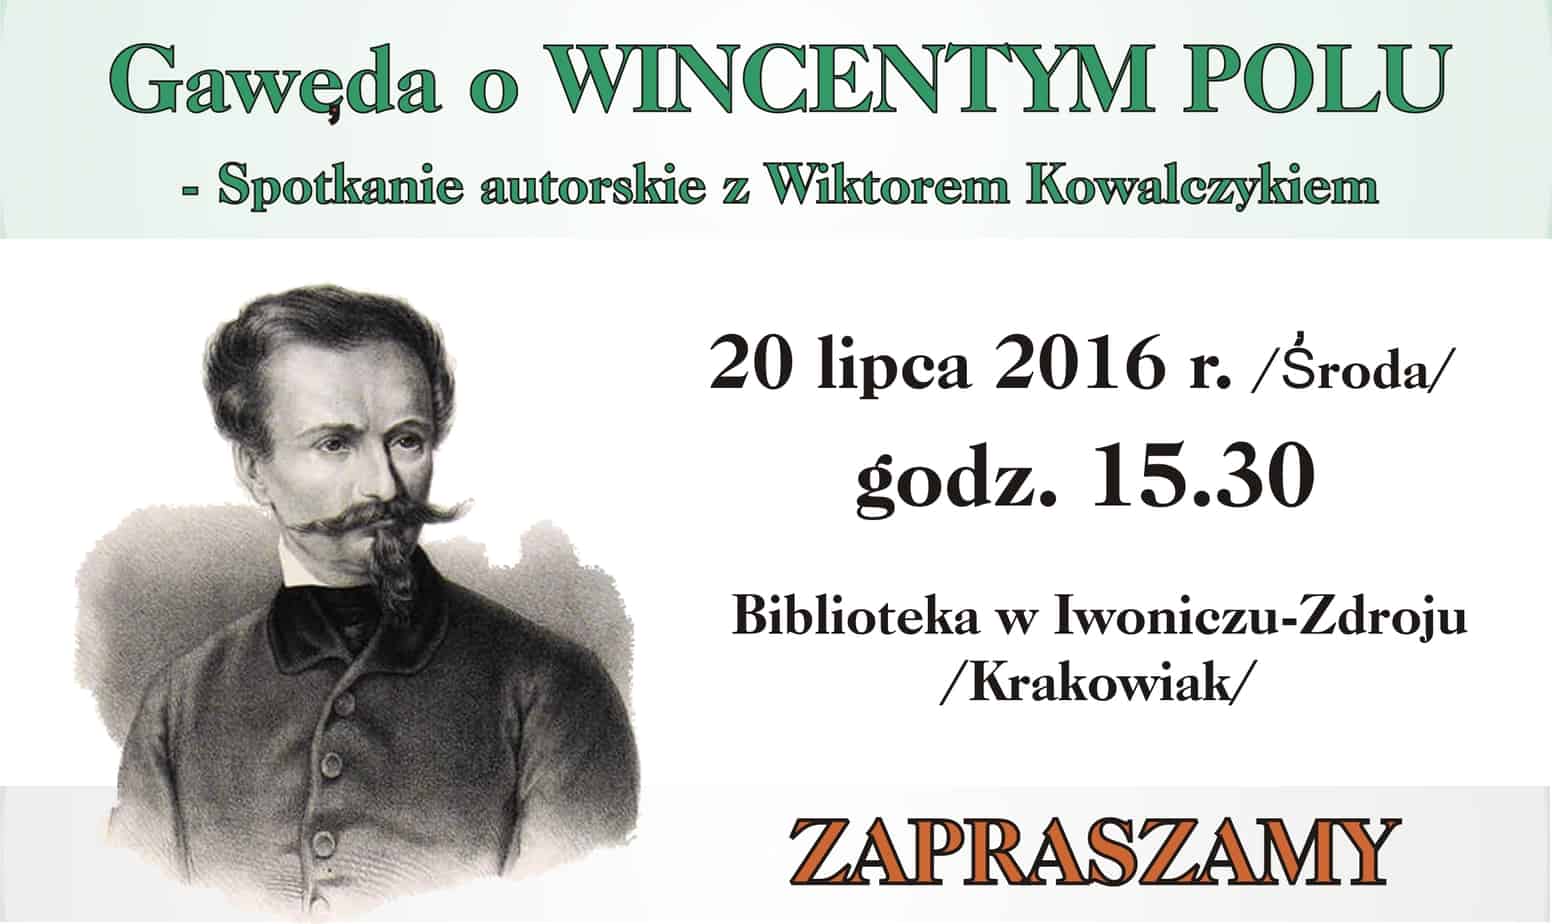 Gawęda o Wincentym Polu – spotkanie autorskie z Wiktorem Kowalczykiem